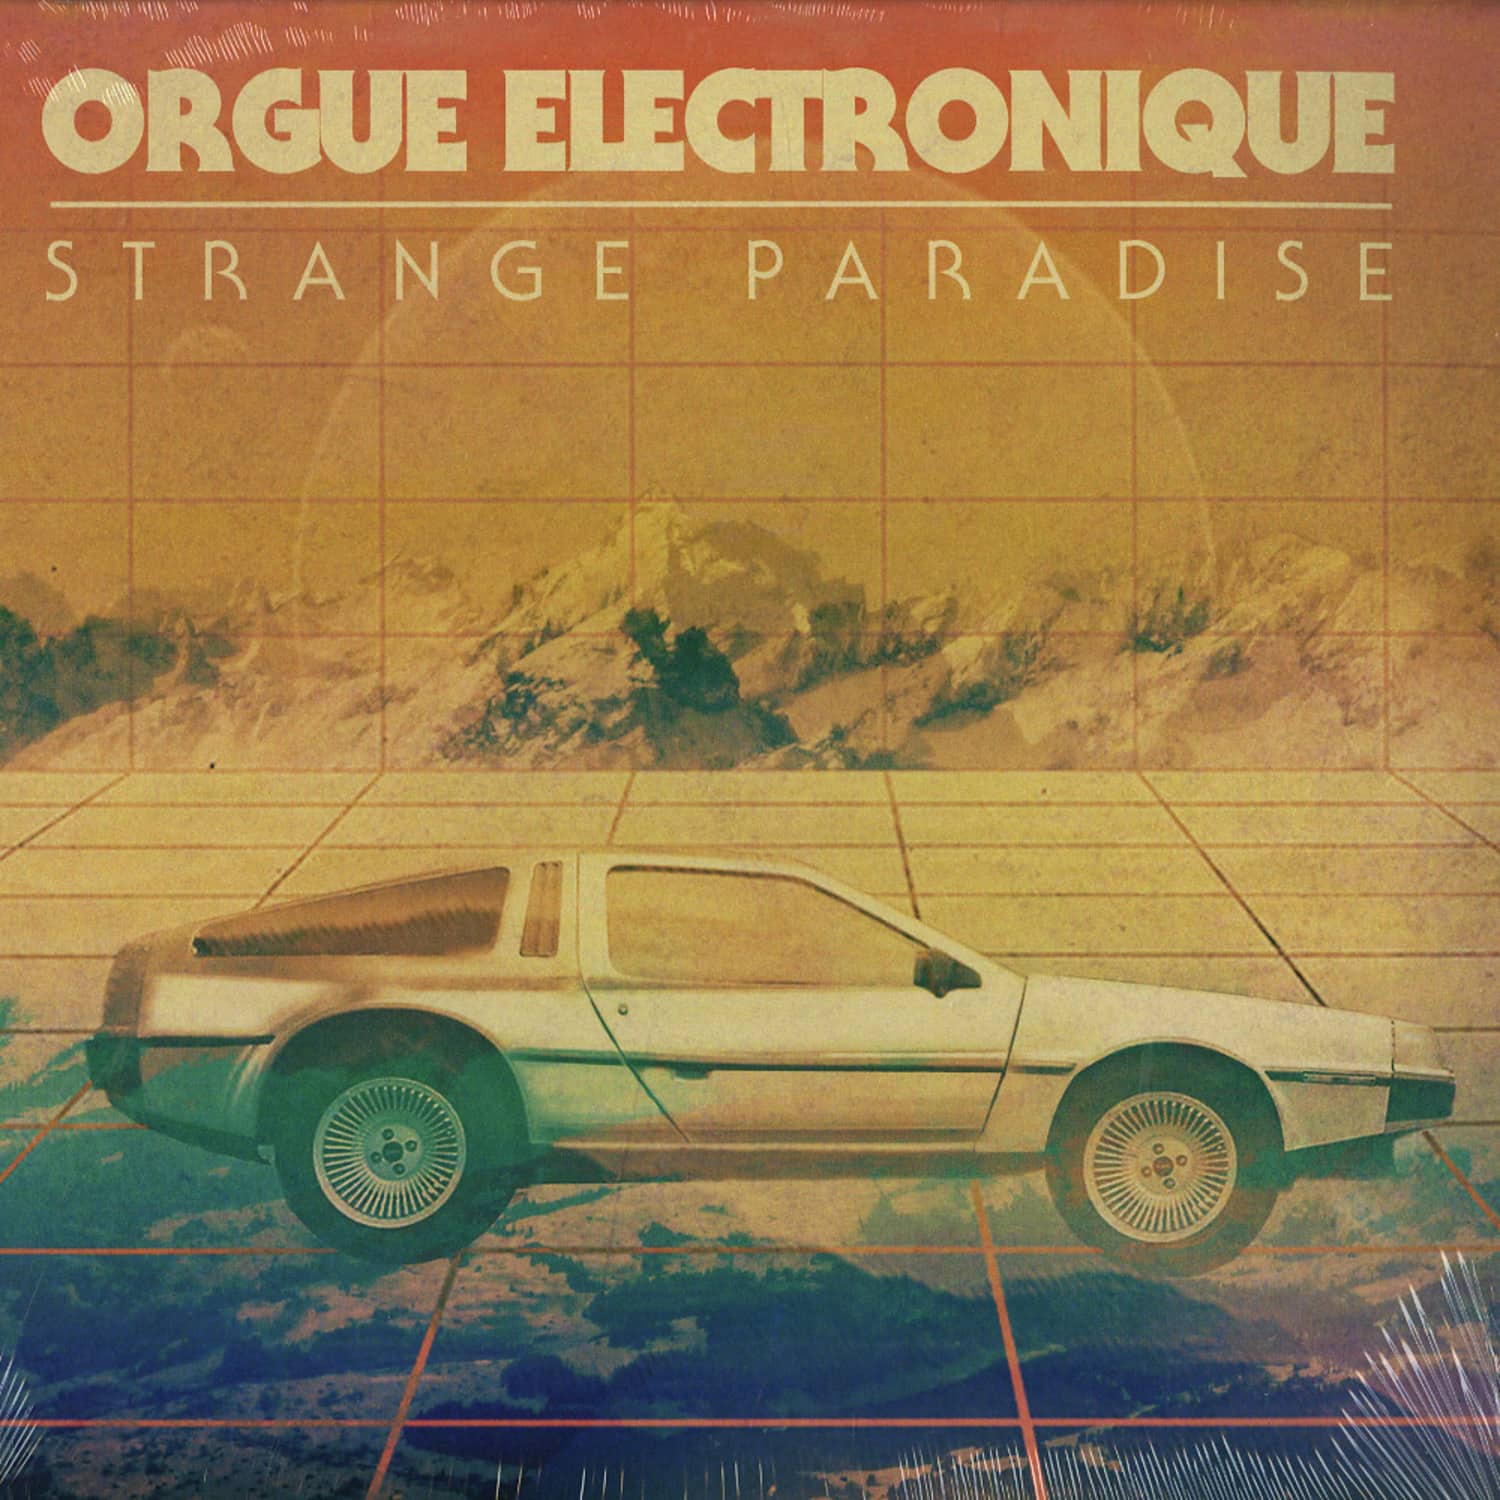 Orgue Electronique - STRANGE PARADISE 